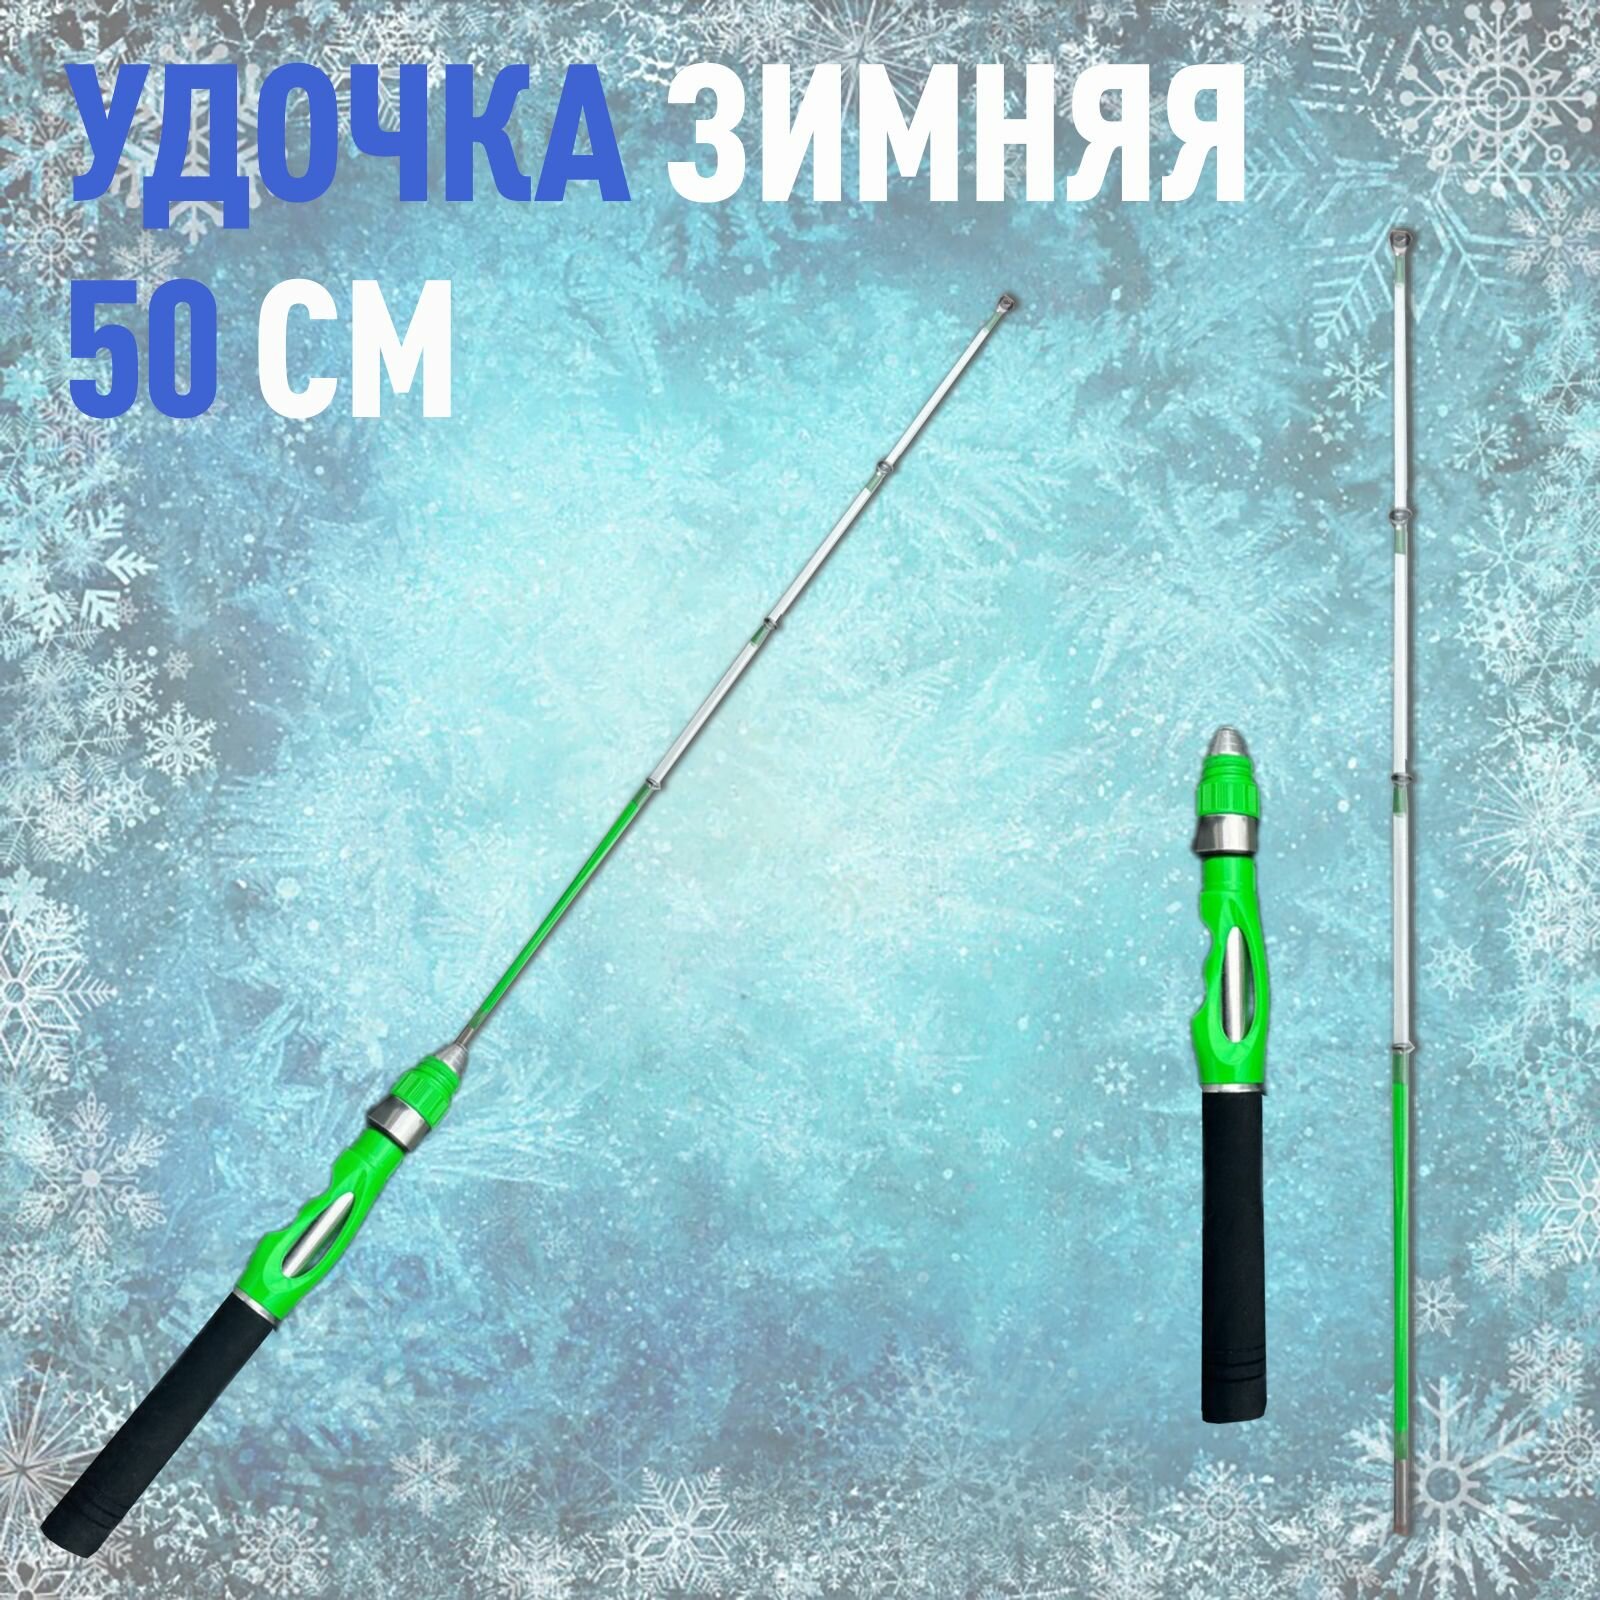 Зимняя удочка для рыбалки неопрен NEW TEX MEBARU 50 см